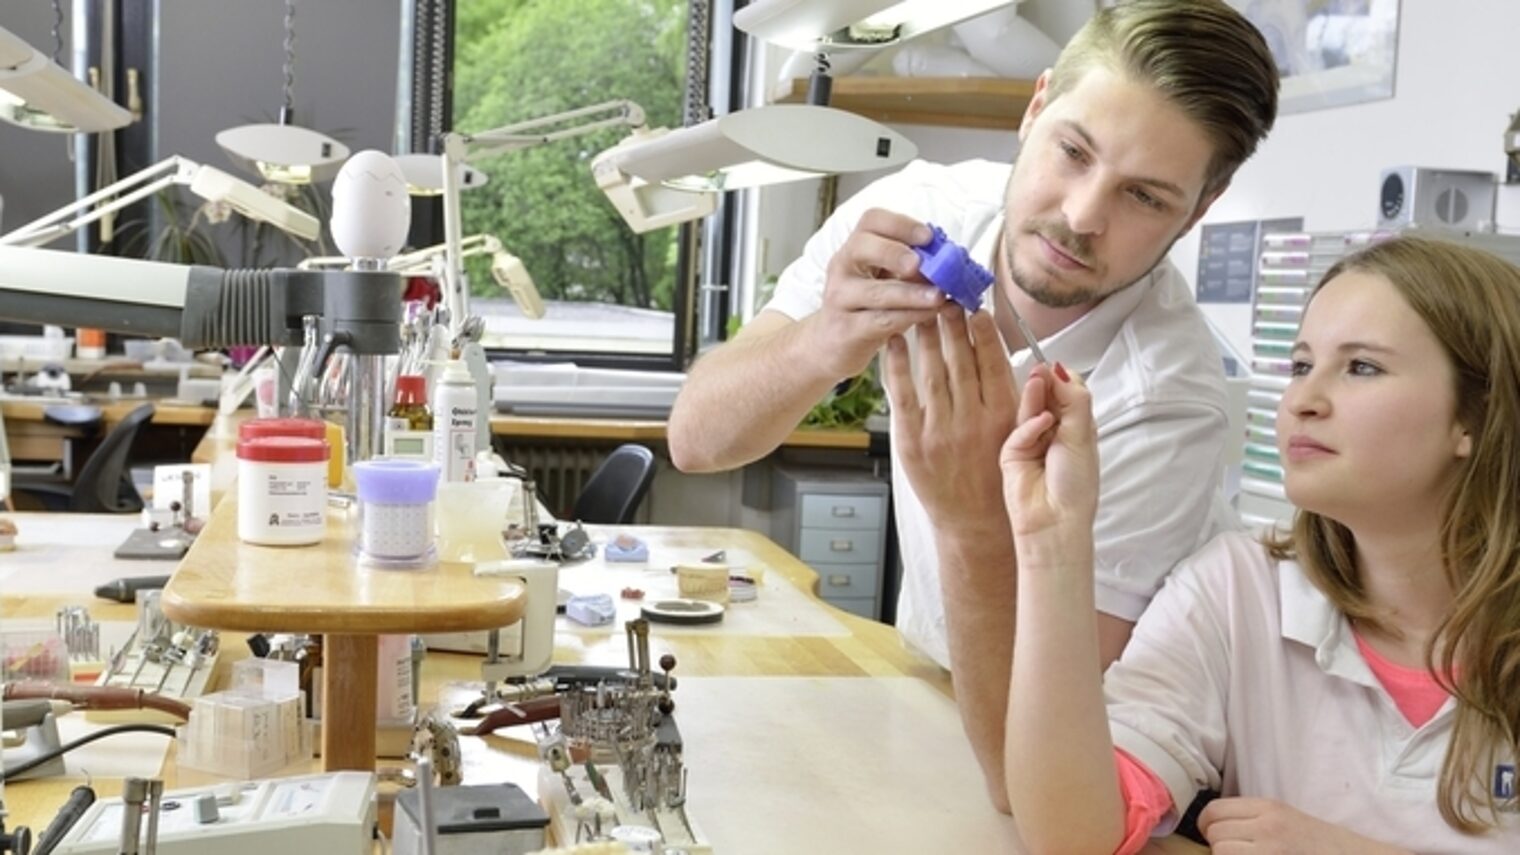 In einer Werkstatt sehen sich ein junger Mann und eine junge Frau einen blauen Zahnabdruck an. Die Frau hält ein Werkzeug.